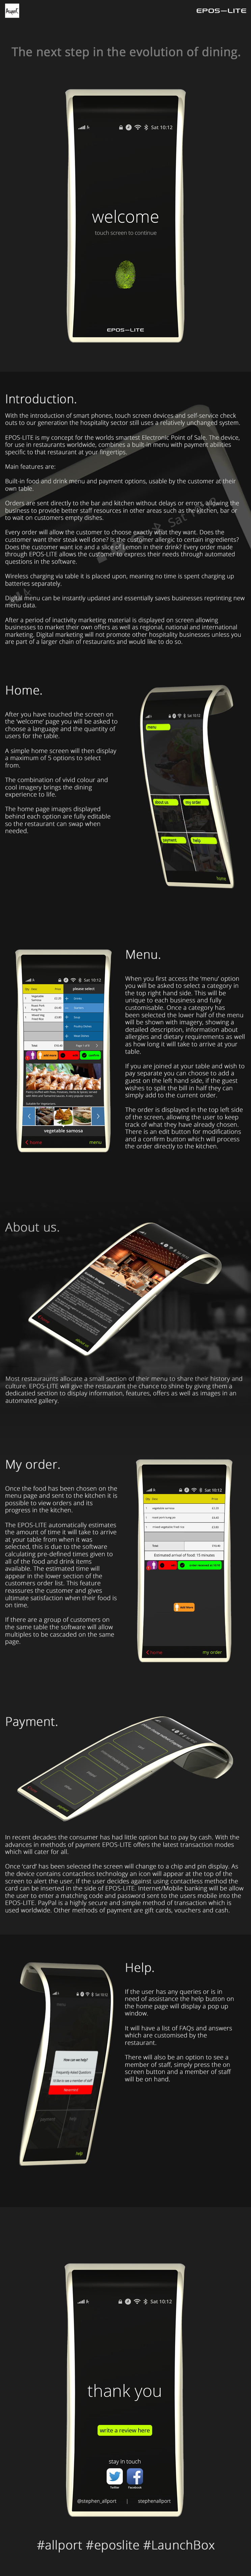 EPOS lite allport cash register Food  restaurants iphone iPad apple ios future mobile concept ios8